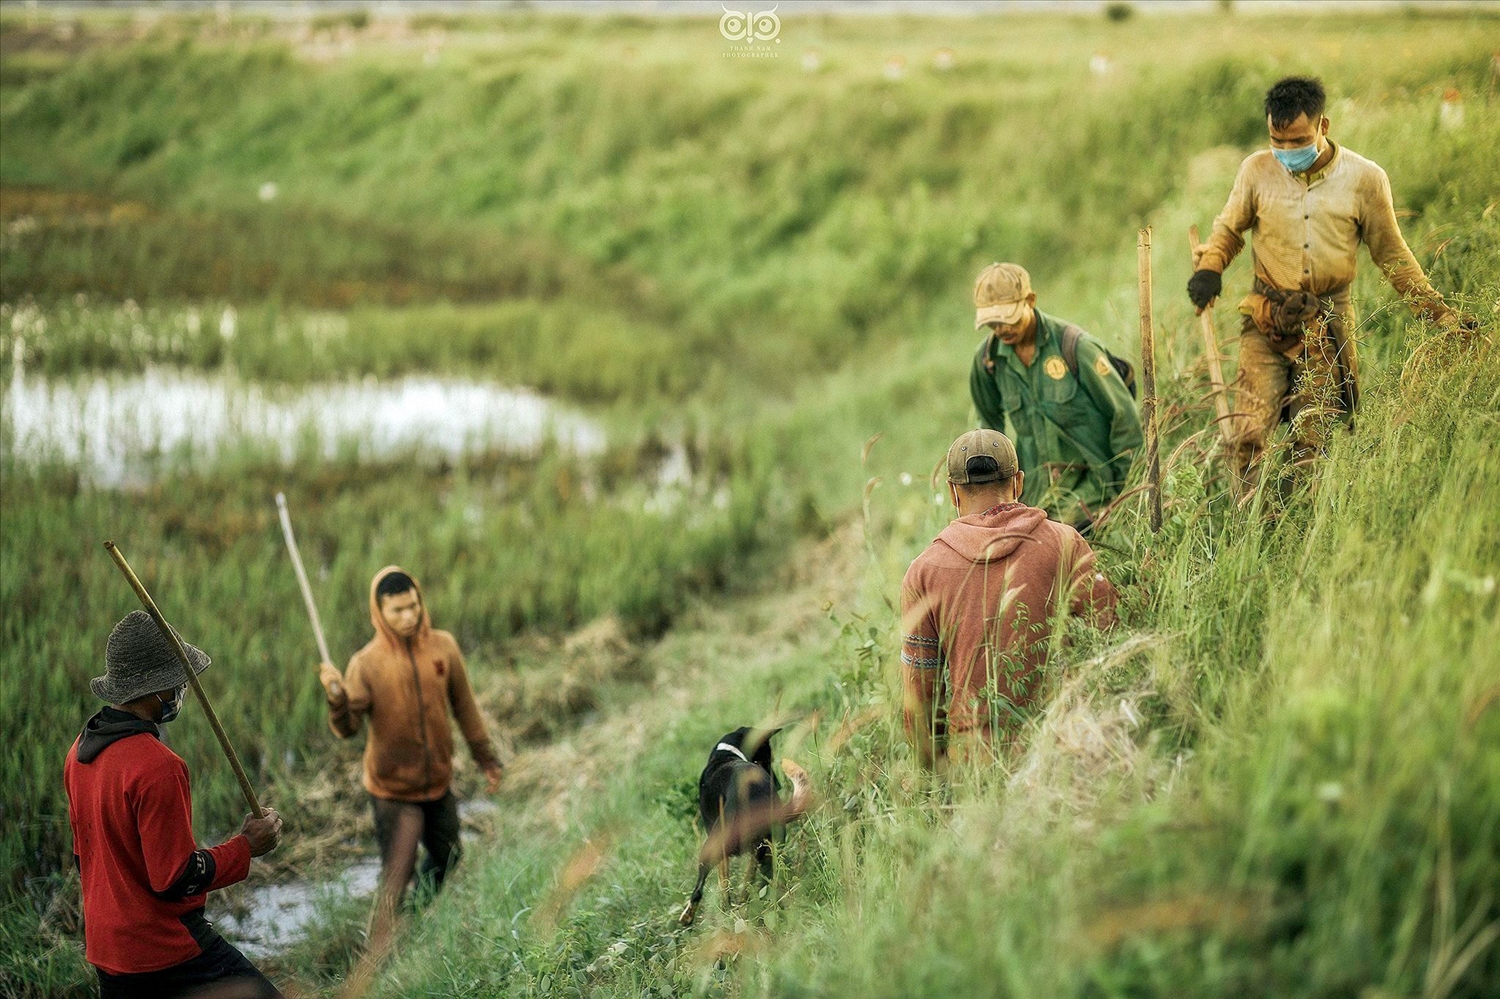 Cứ đến mùa thu hoạch lúa, nhiều thanh niên và đàn ông trong làng Groi 2 (xã Glar, huyện Đak Đoa, Gia Lai) lại cùng nhau đi khắp các cánh đồng để săn chuột. Họ không chỉ săn chuột đồng để chế biến món ngon truyền thống mà còn để tìm kiếm niềm vui